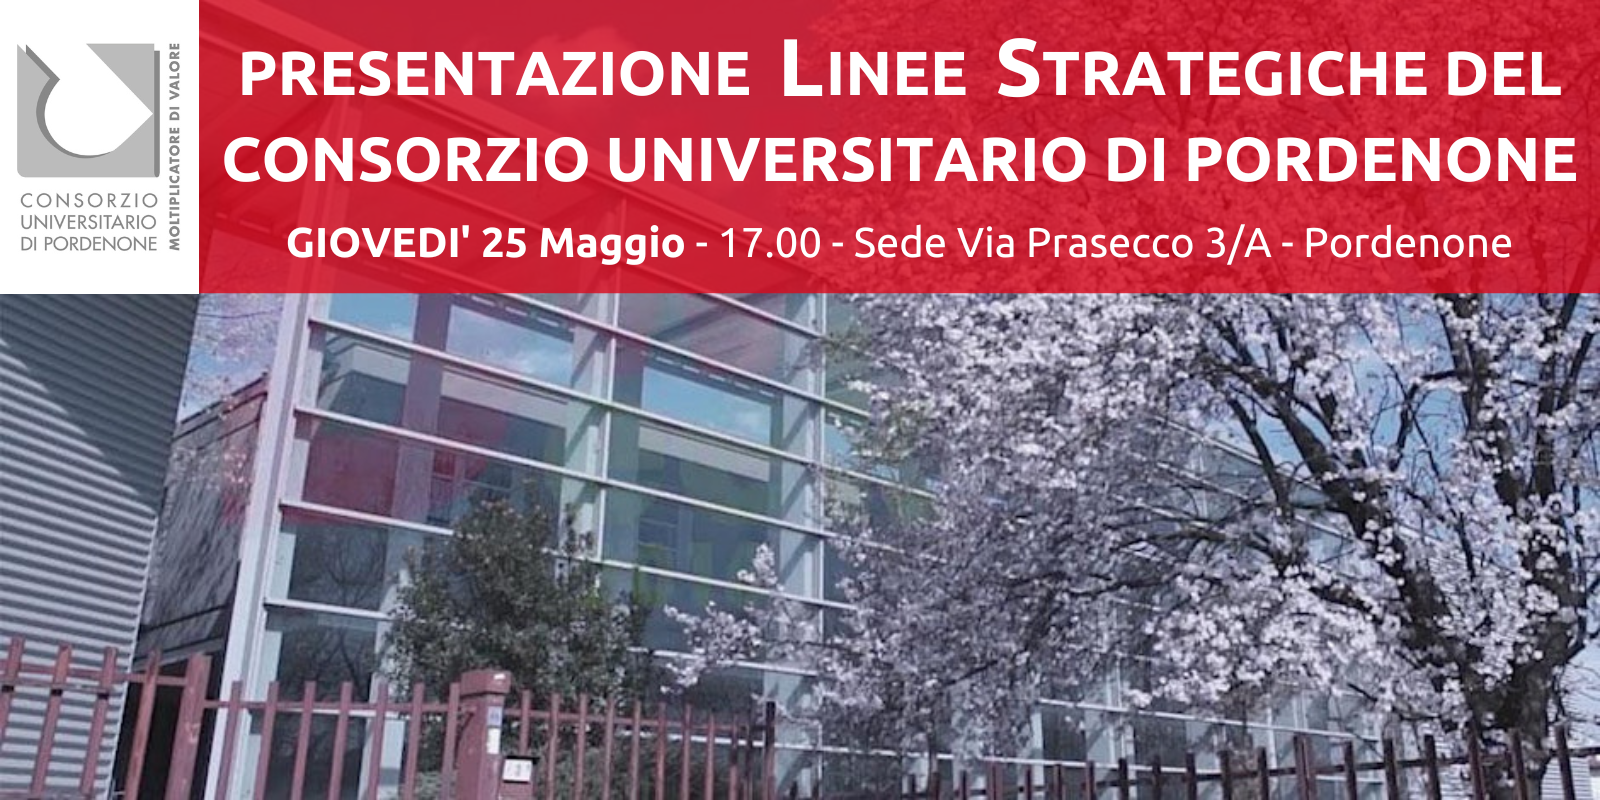 Presentazione linee strategiche Consorzio Universitario di Pordenone